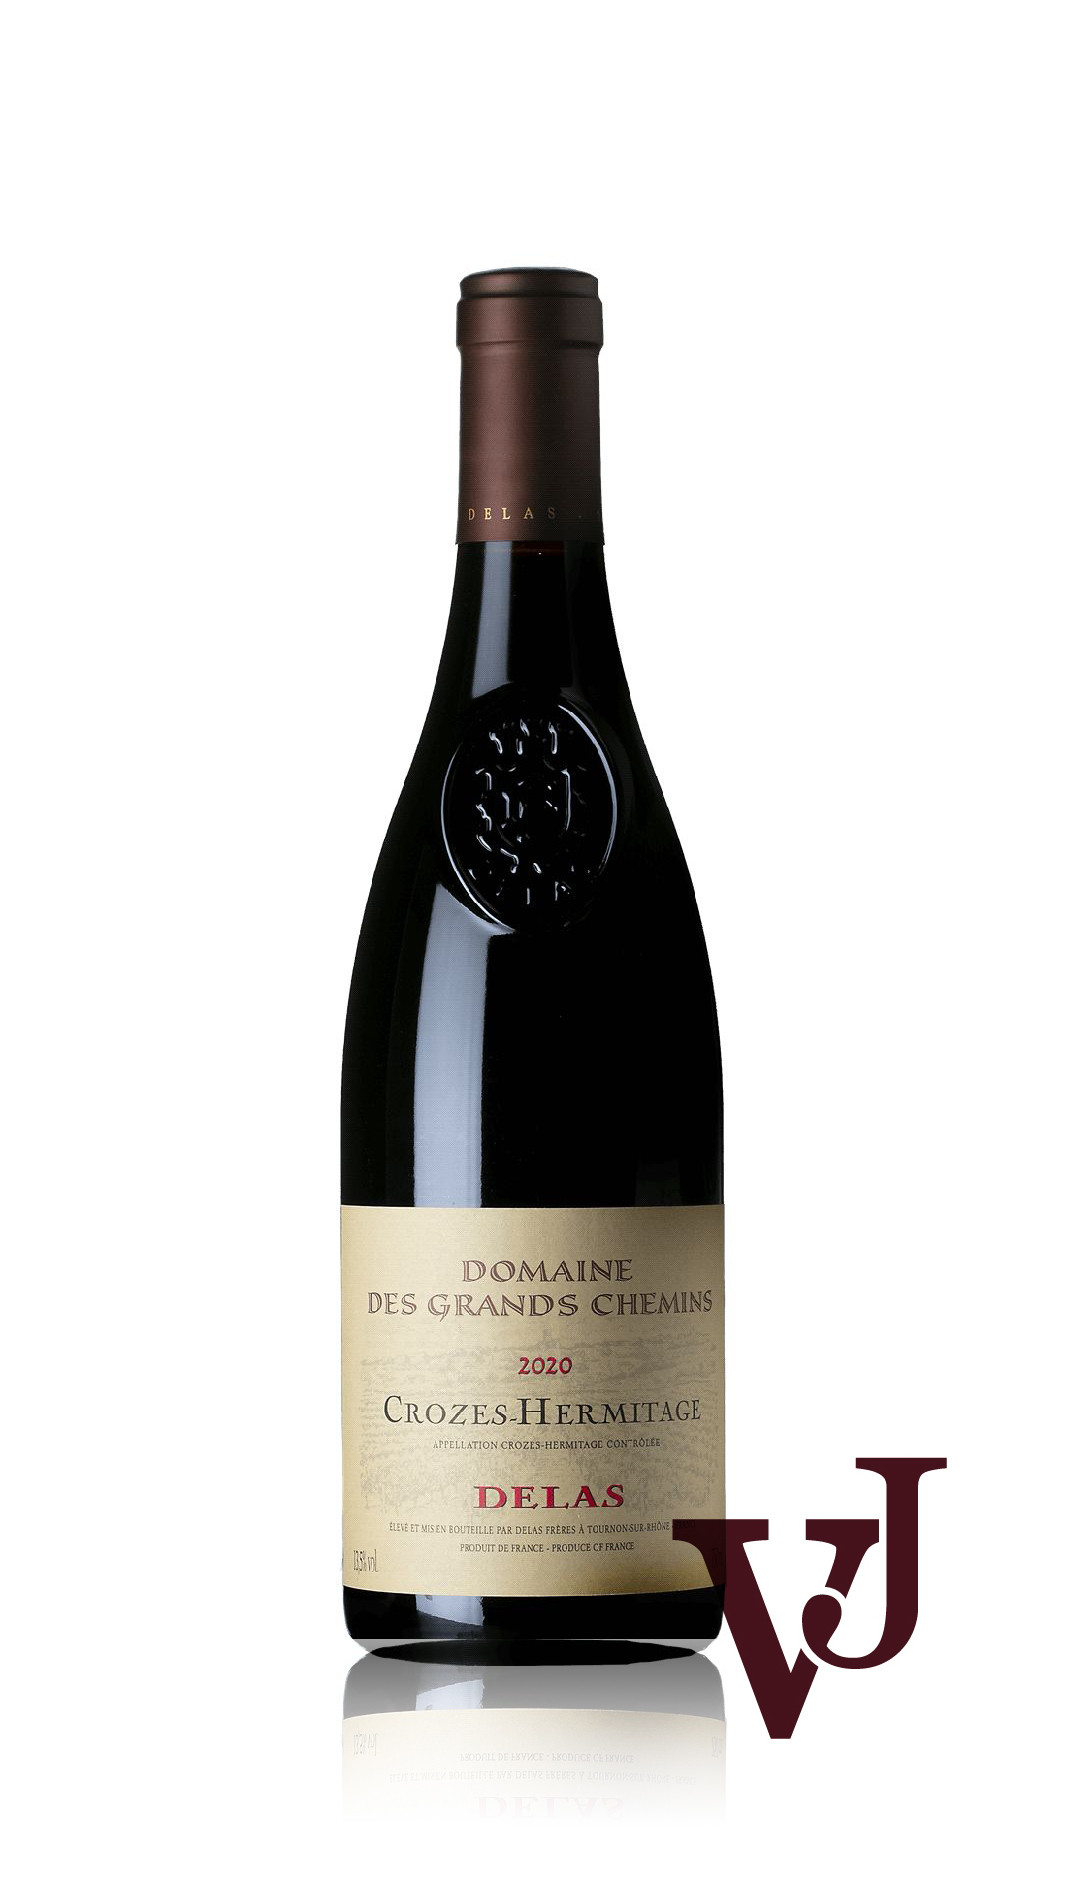 Rött Vin - Crozes-Hermitage Domaine des Grands Chemins 2020 artikel nummer 9347101 från producenten Delas Frères från Frankrike